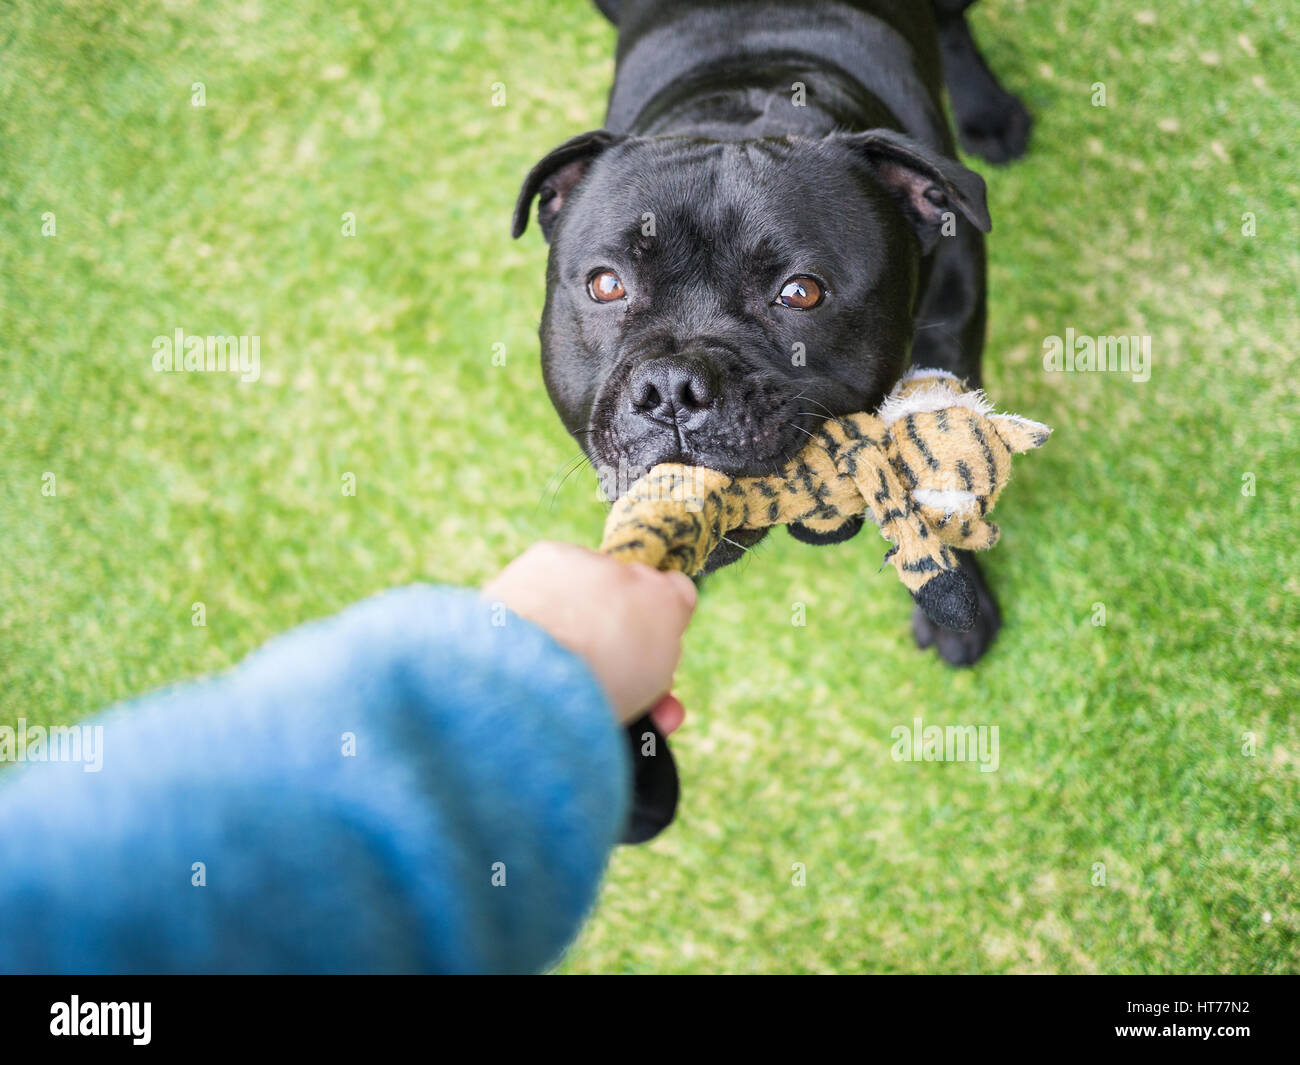 Eine schwarze Staffordshire Bull Terrier Hund Schlepper, hält ein weiches Spielzeug in den Mund, ziehen mit einem Menschen zu spielen. Der Arm und hatte von der Person gesehen werden kann. Stockfoto